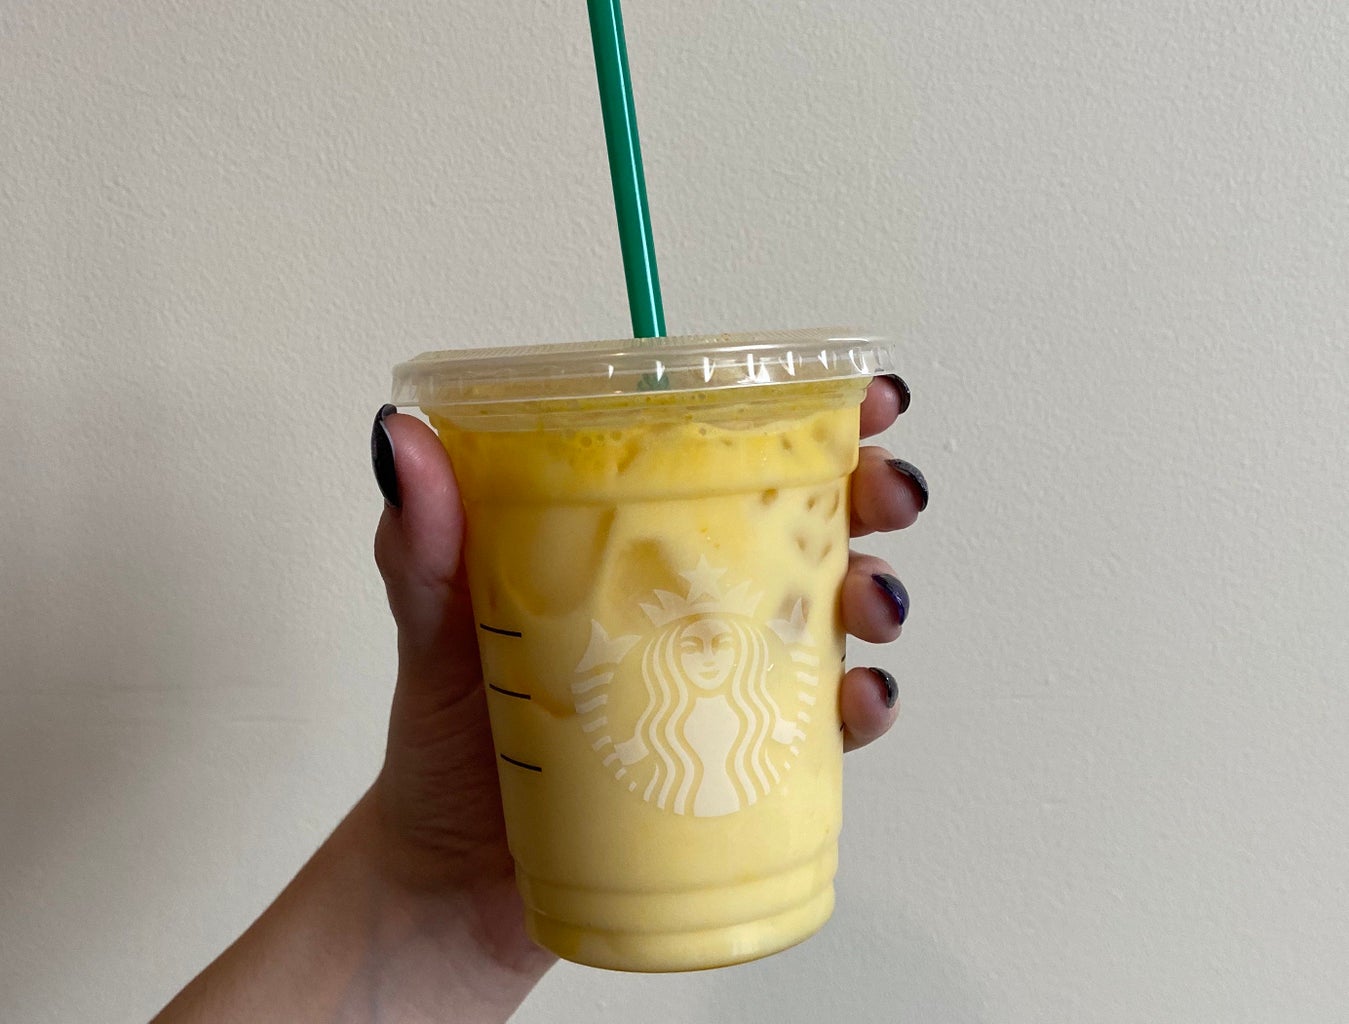 New Starbucks Iced Golden Ginger Drink